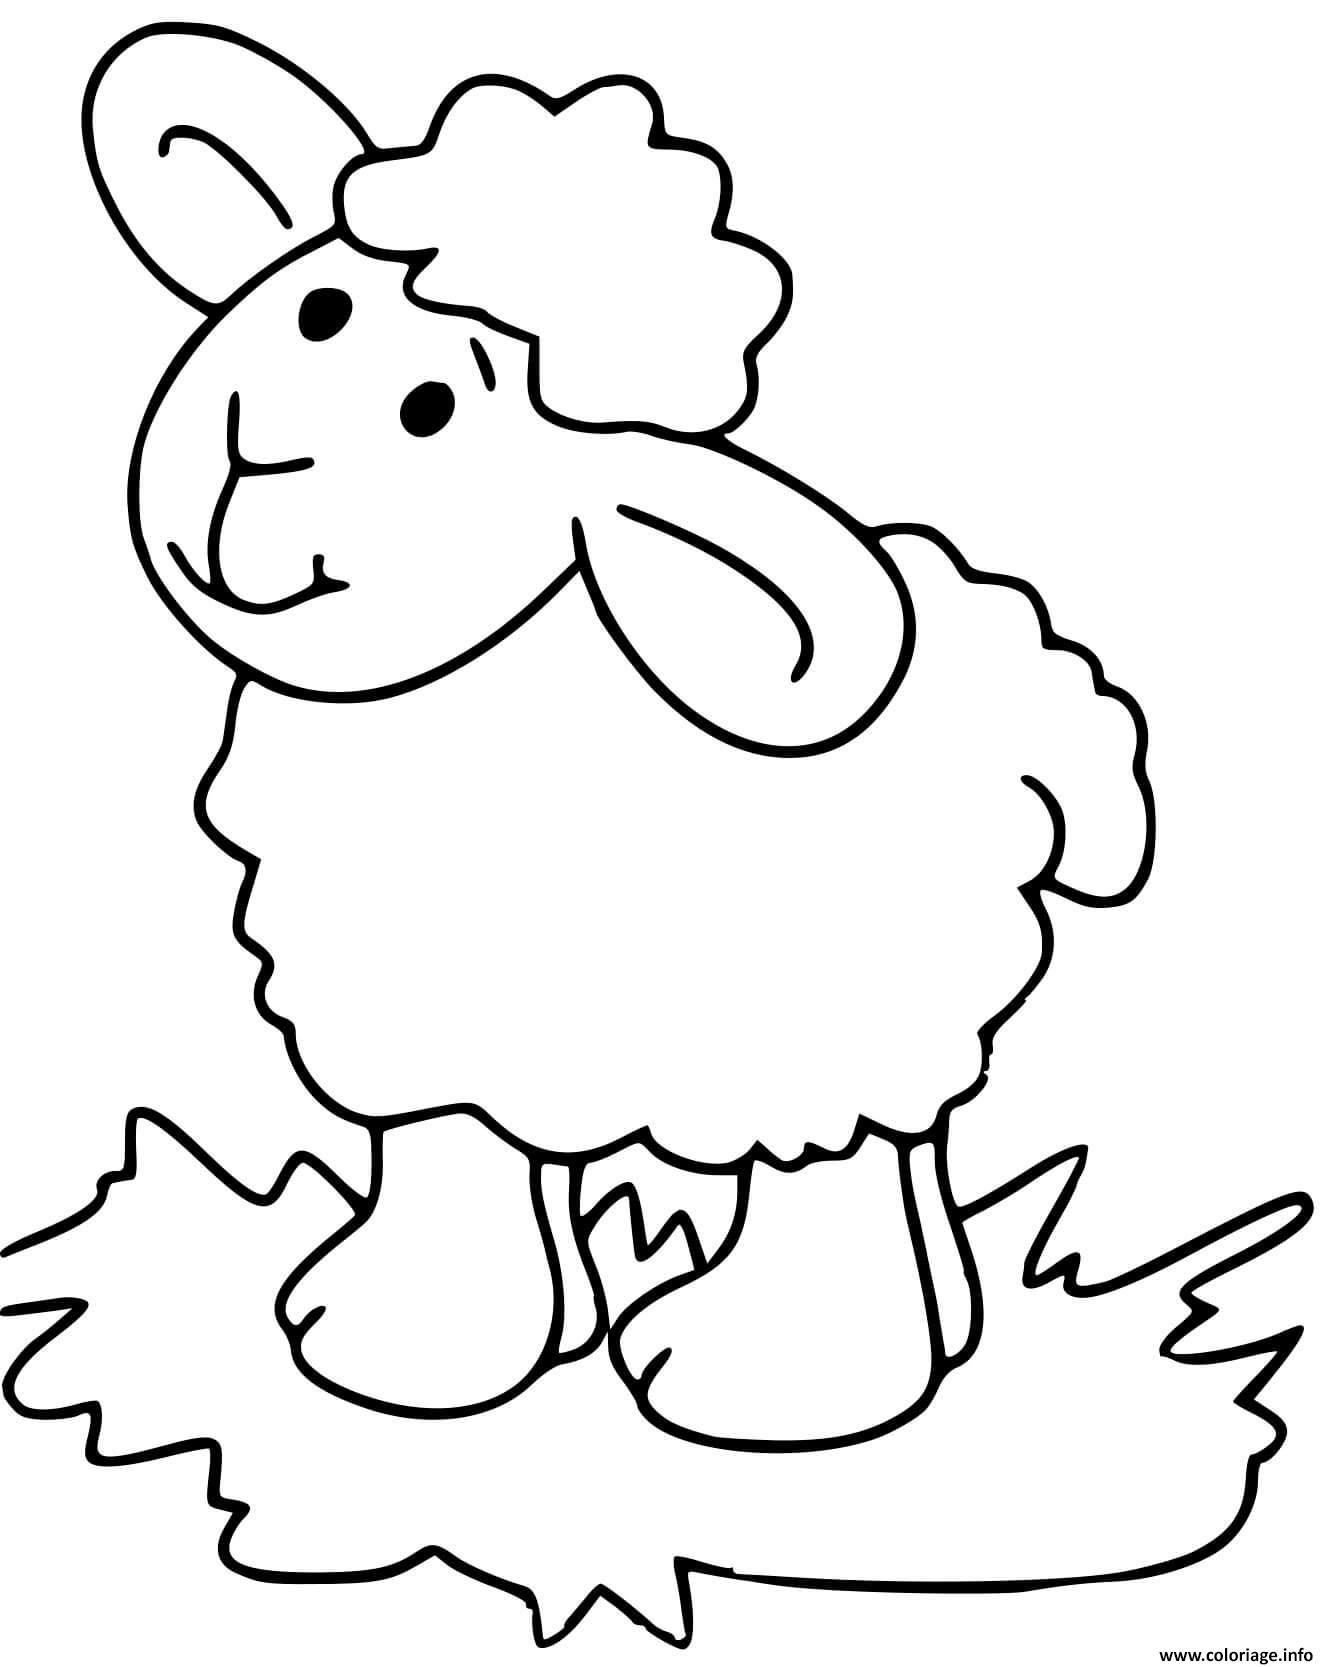 Dessin mouton pour enfants Coloriage Gratuit à Imprimer